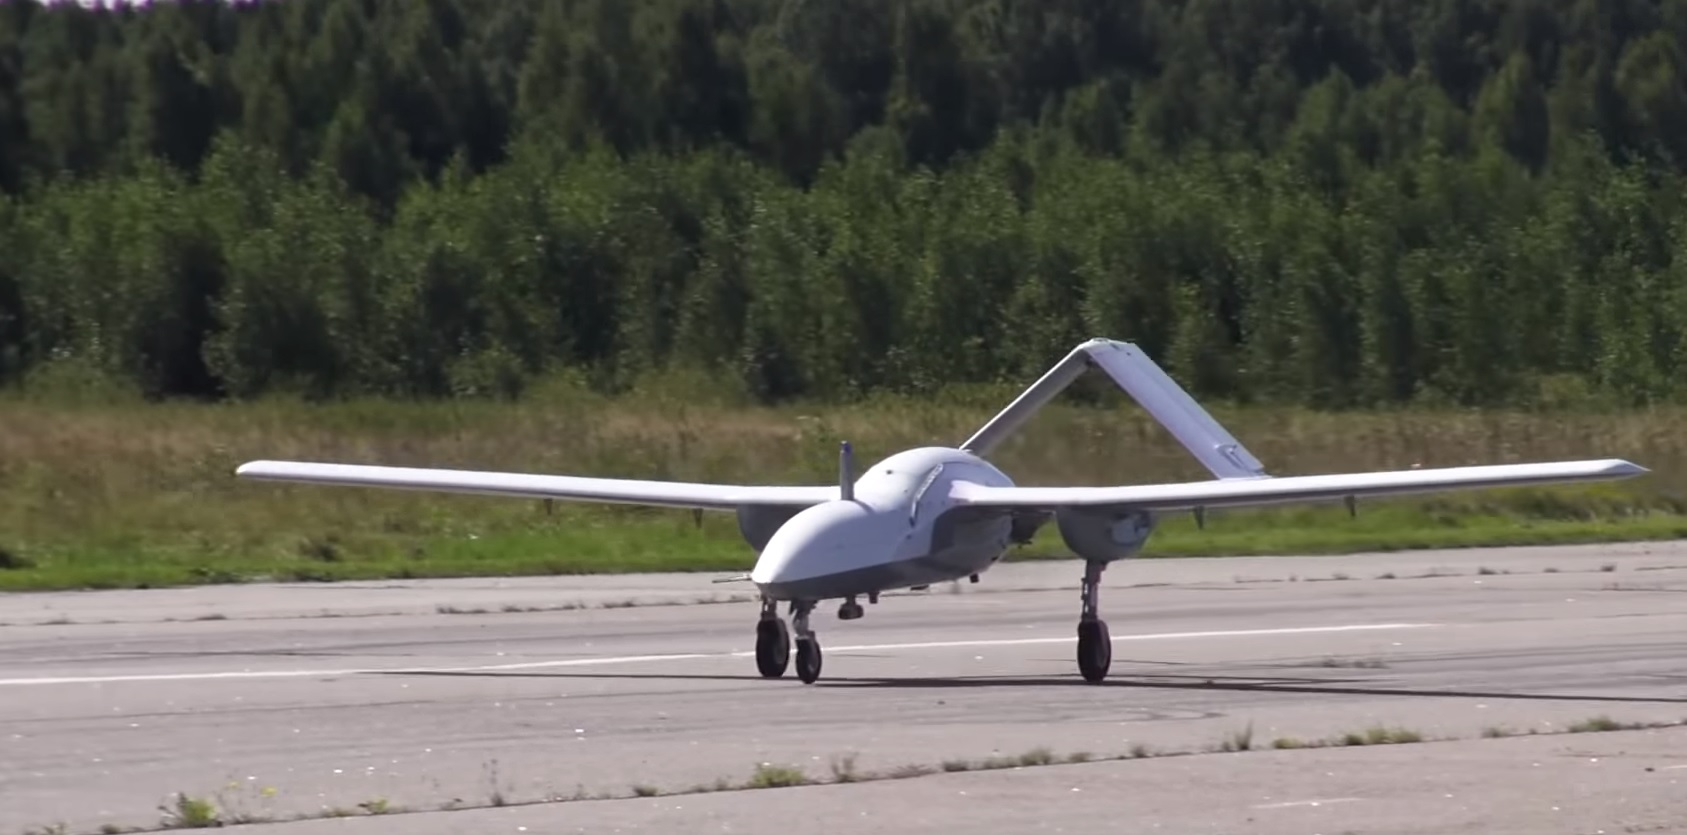 Orosz drón Corsair.  2018 év.  Oroszország.  Képkocka az Orosz Föderáció Védelmi Minisztériumának videójából